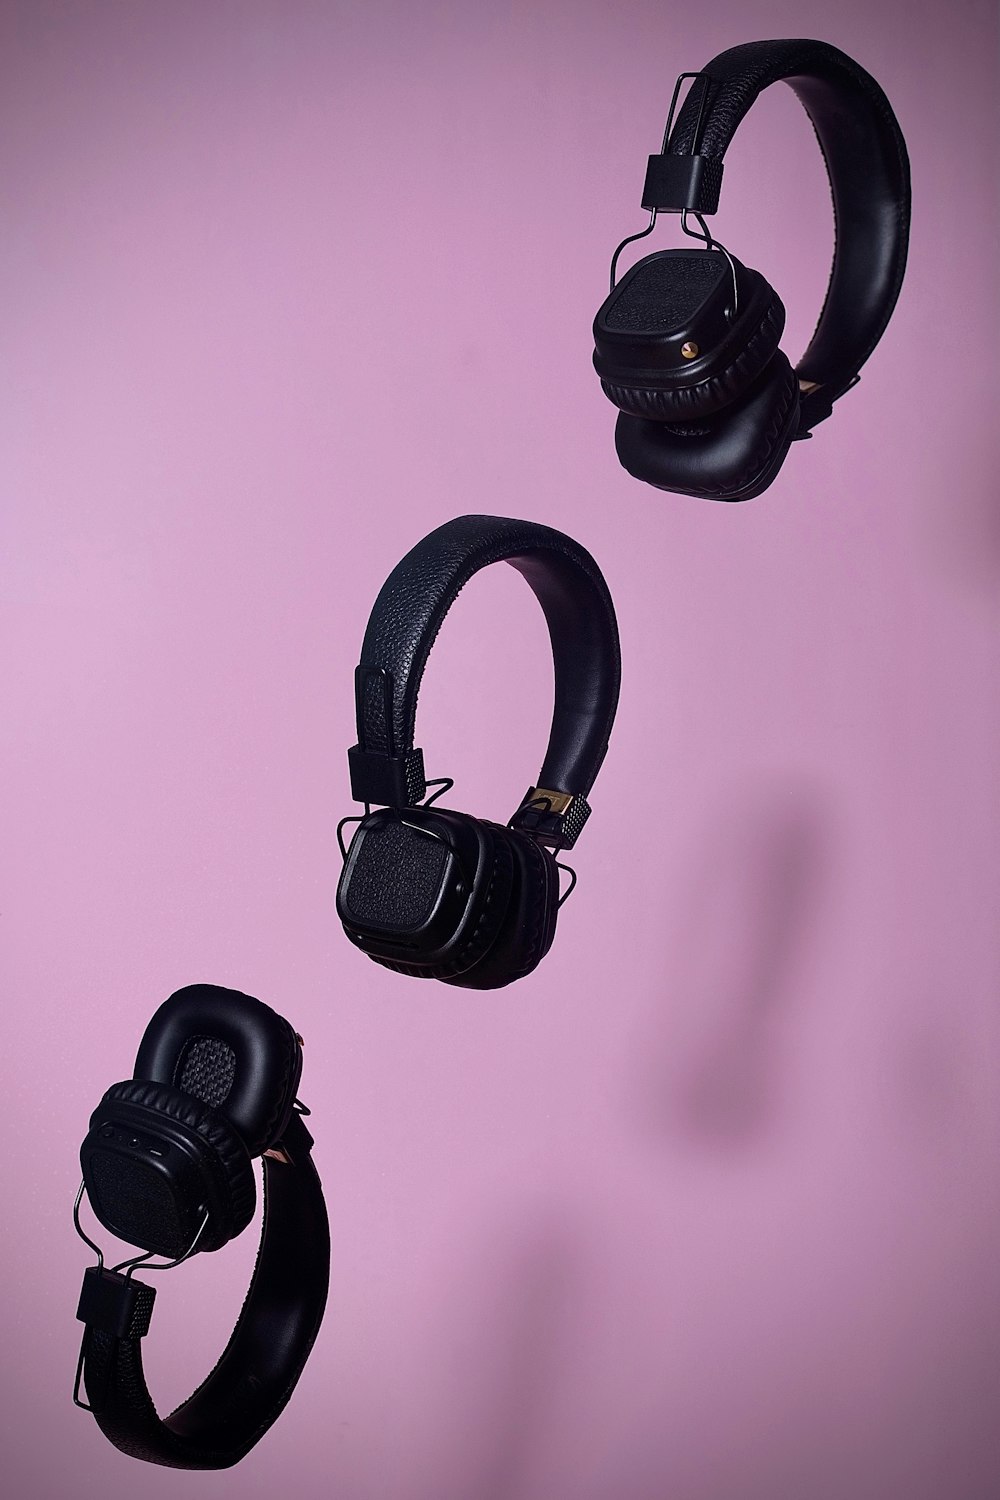 drei schwarze schnurlose Kopfhörer